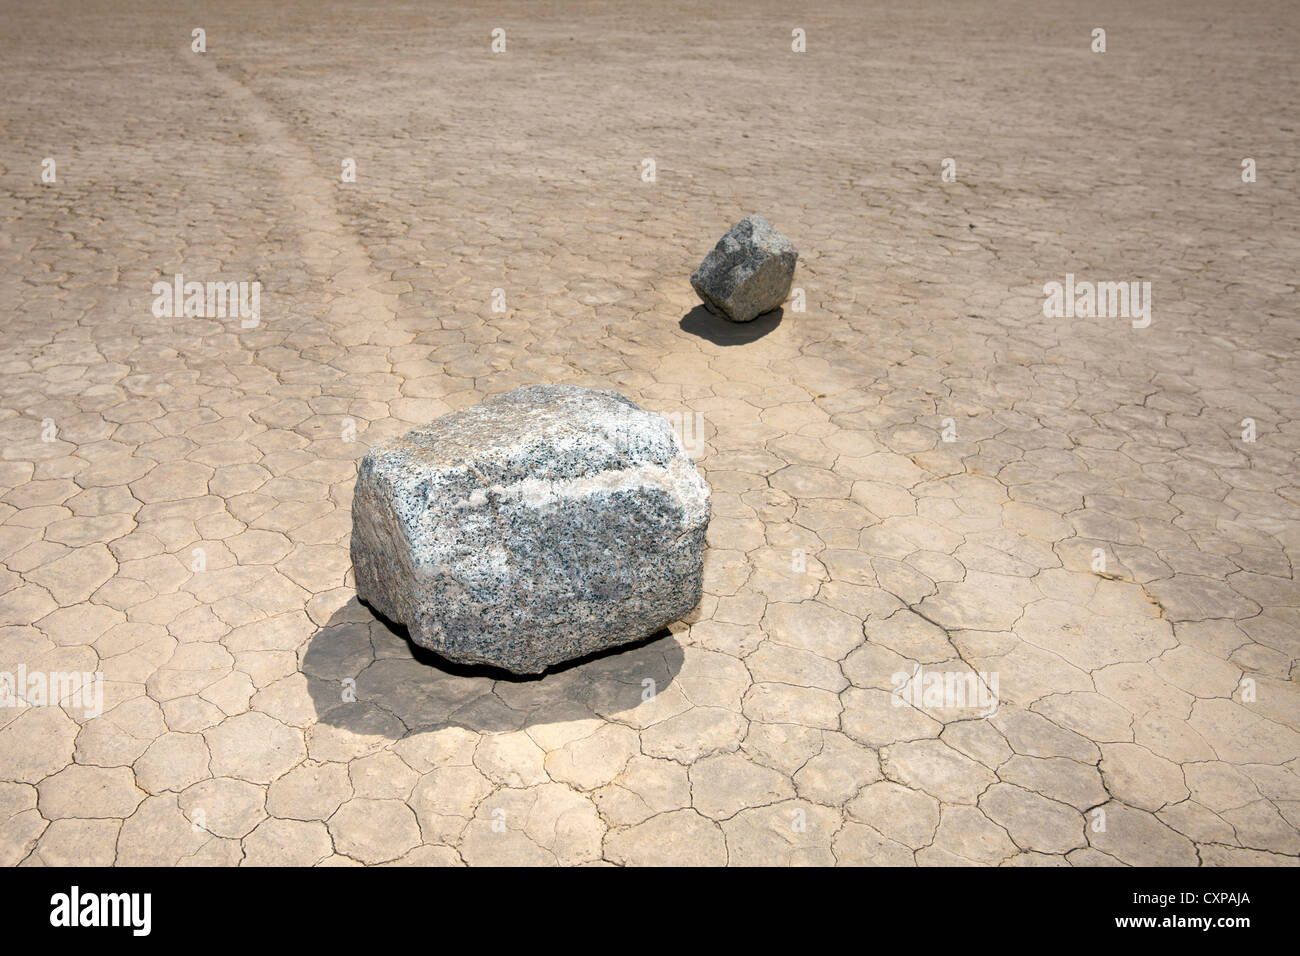 Beweglichen Felsen auf dem Racetrack Playa, Death Valley Nationalpark, Kalifornien, Vereinigte Staaten von Amerika Stockfoto